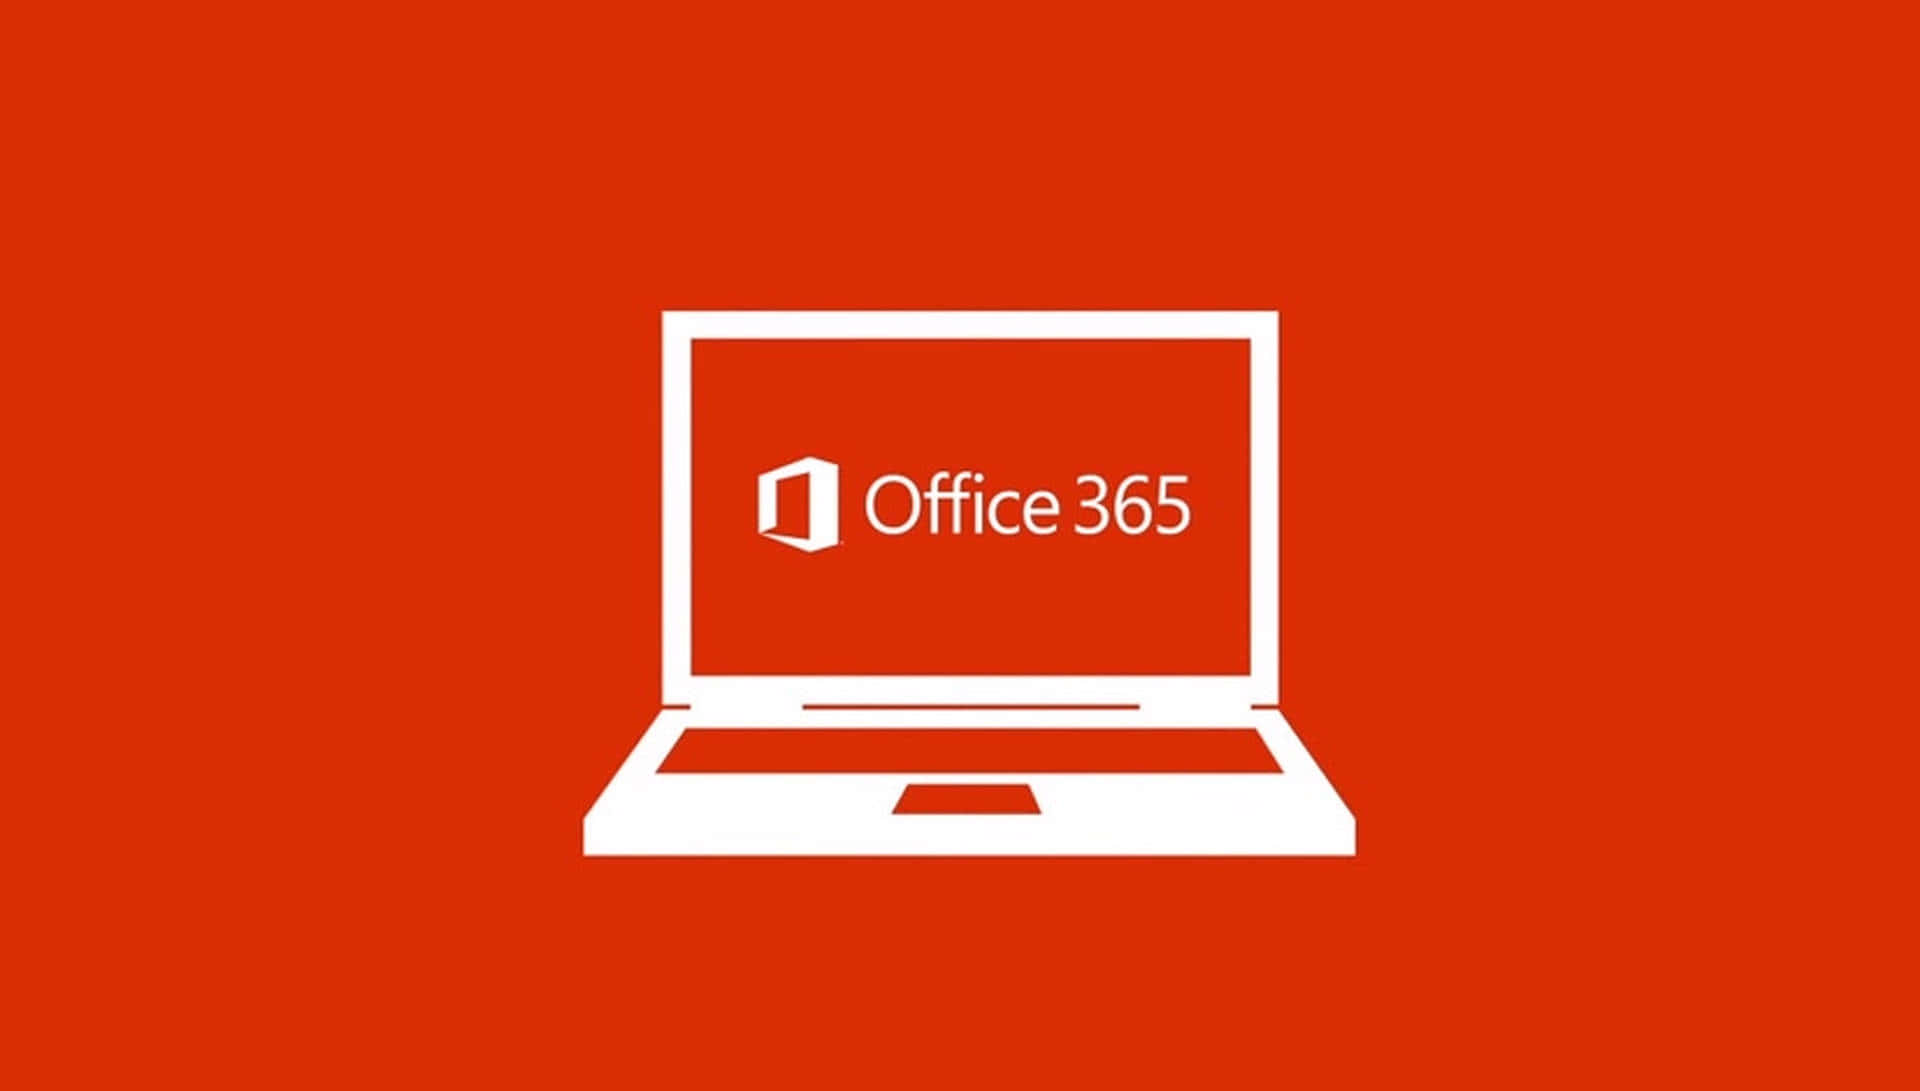 Logodi Office 365 Su Uno Sfondo Rosso